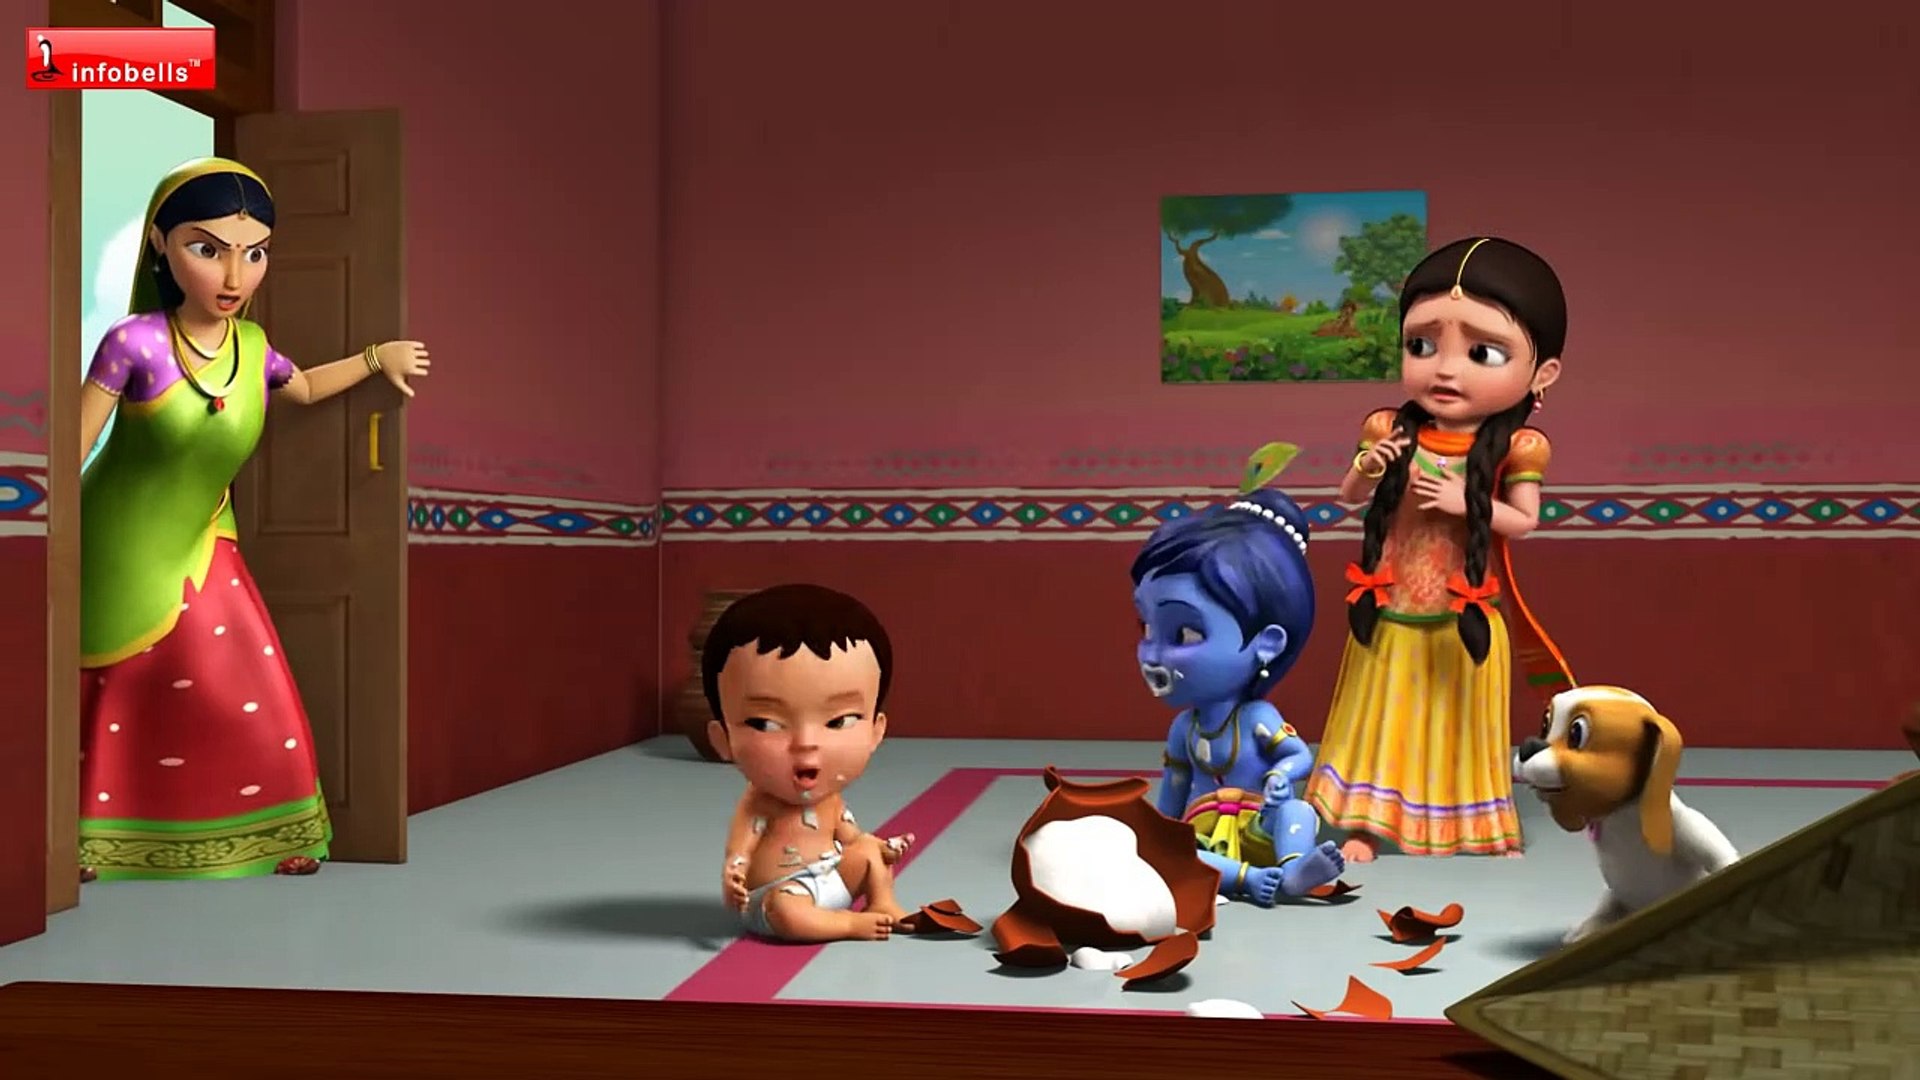 వెన్న దొంగ కృష్ణ వస్తాడు   Little Krishna Telugu Rhymes for Children  Infobells